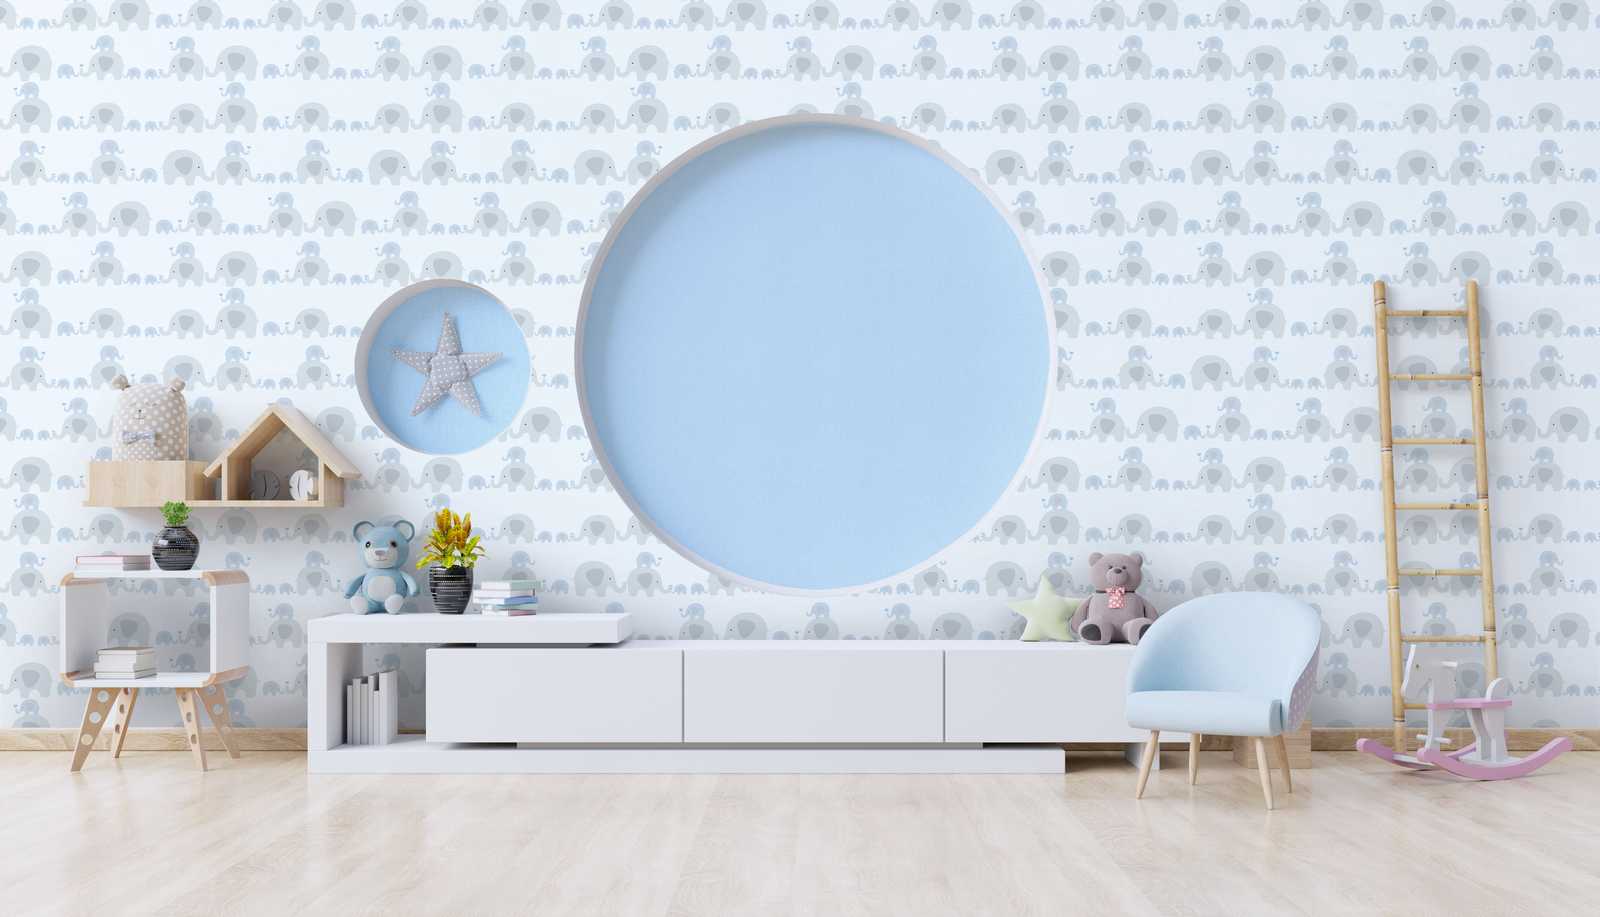             Nursery wallpaper boy elephants - blue, grey, white
        